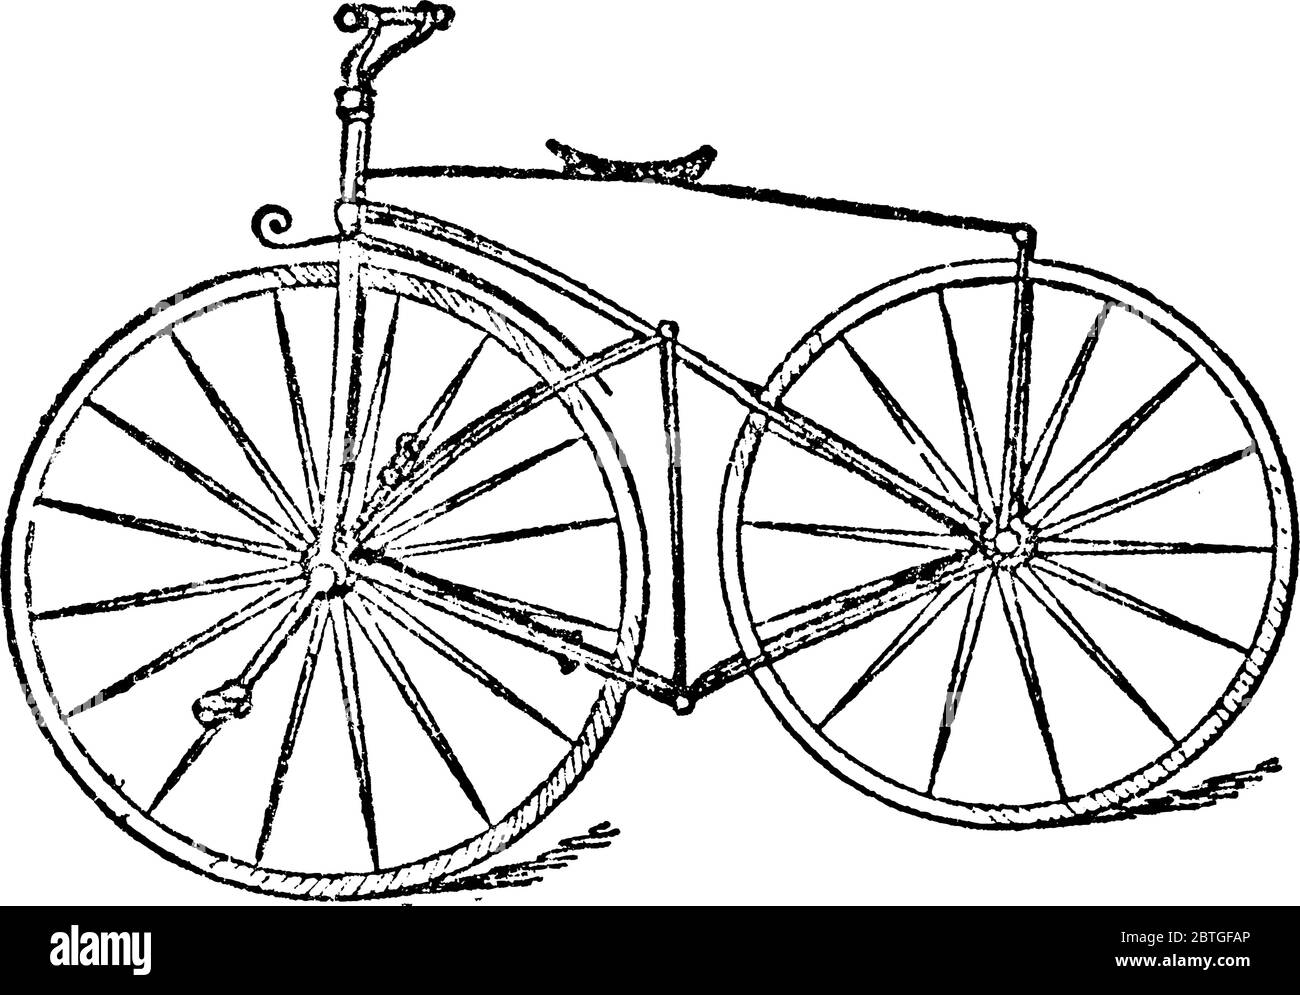 Bicicletta, un veicolo a pedale, a motore umano con due ruote fissate ad un telaio, uno dietro l'altro, disegno di linea vintage o incisione illustri Illustrazione Vettoriale